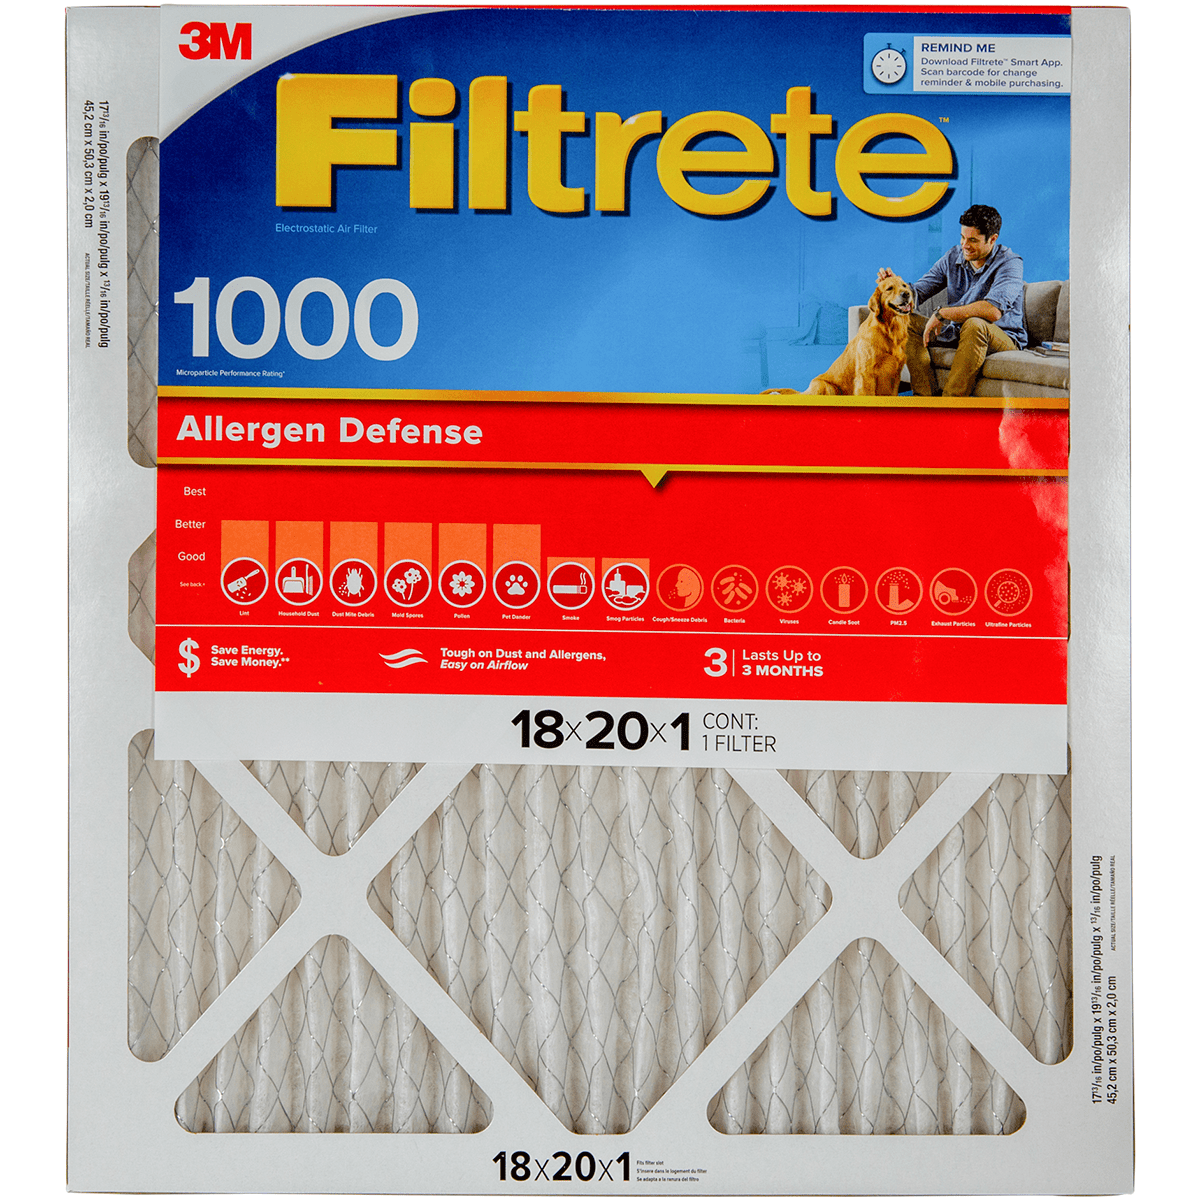 3M Filtrete Allergen Defense Furnace Filter 18x20x1